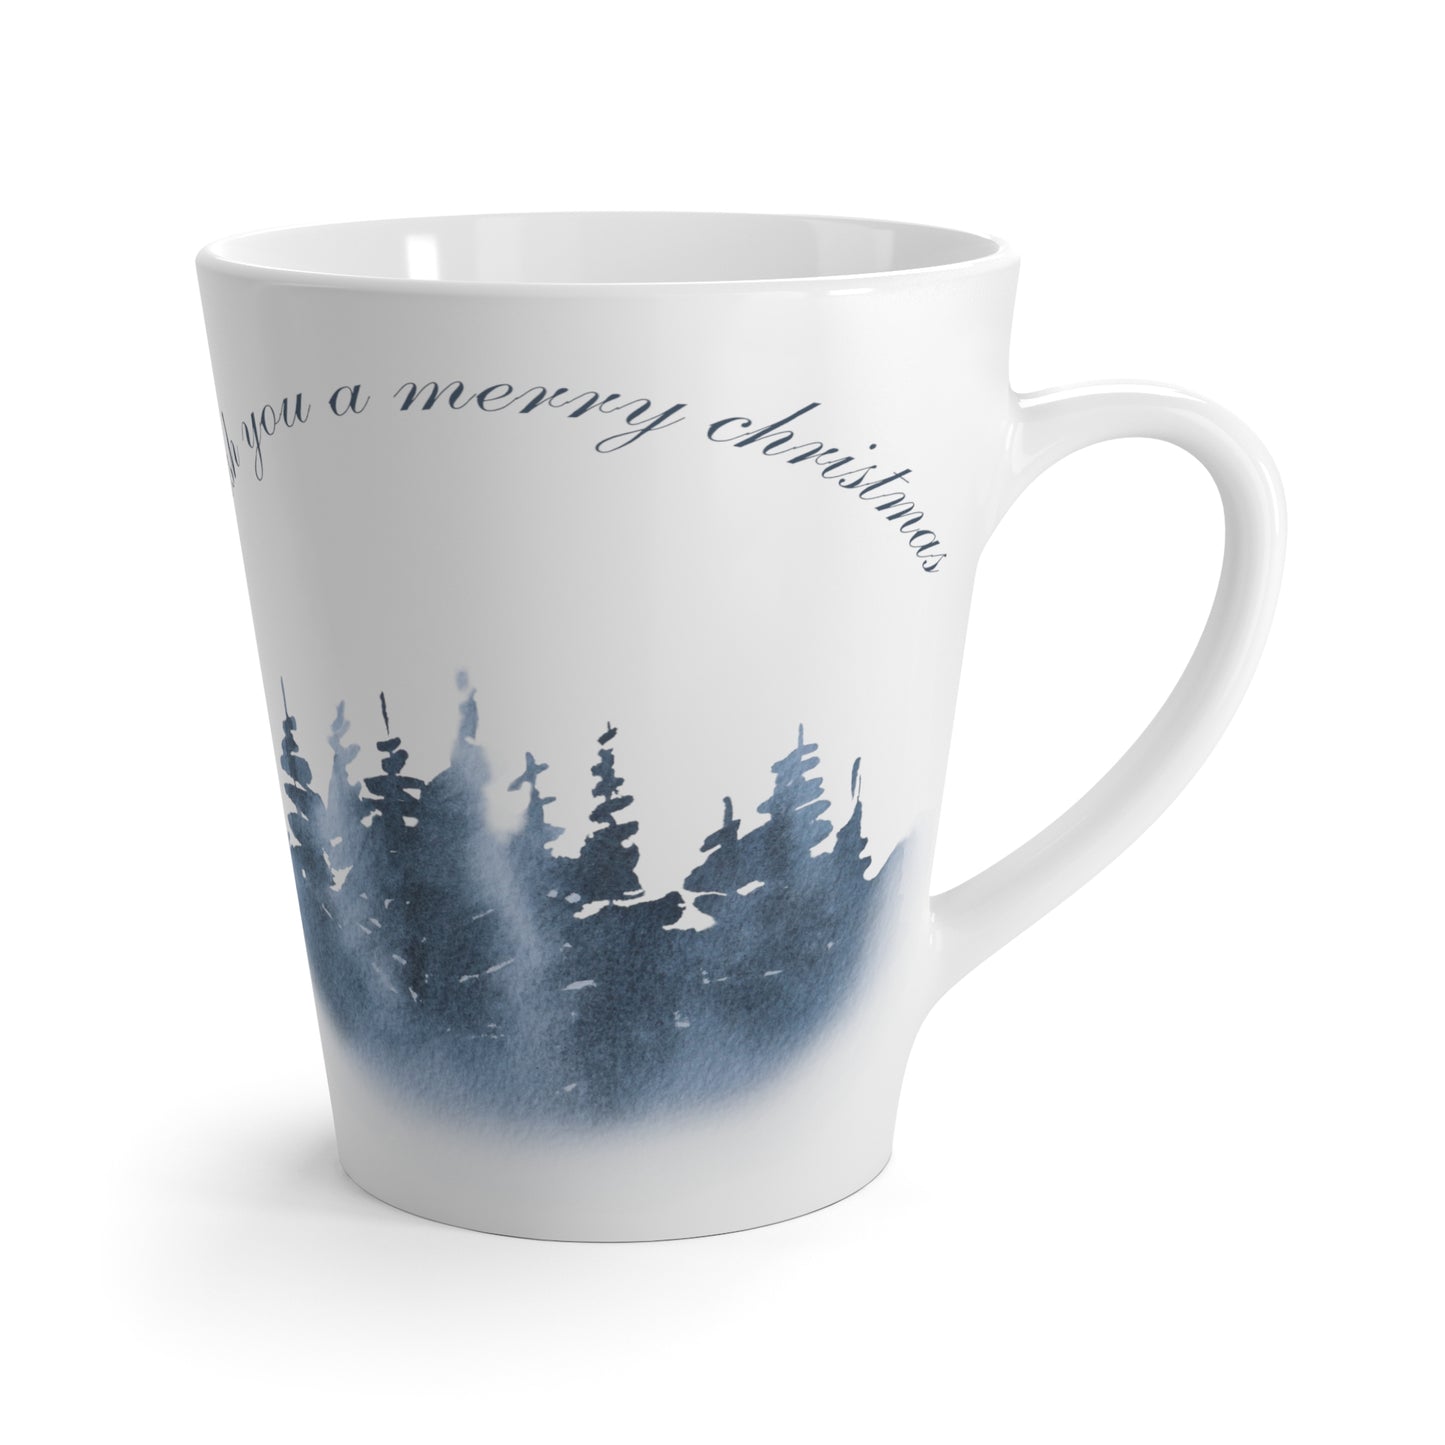 Wish You a Merry Christmas Printed Latte Mug, 12oz